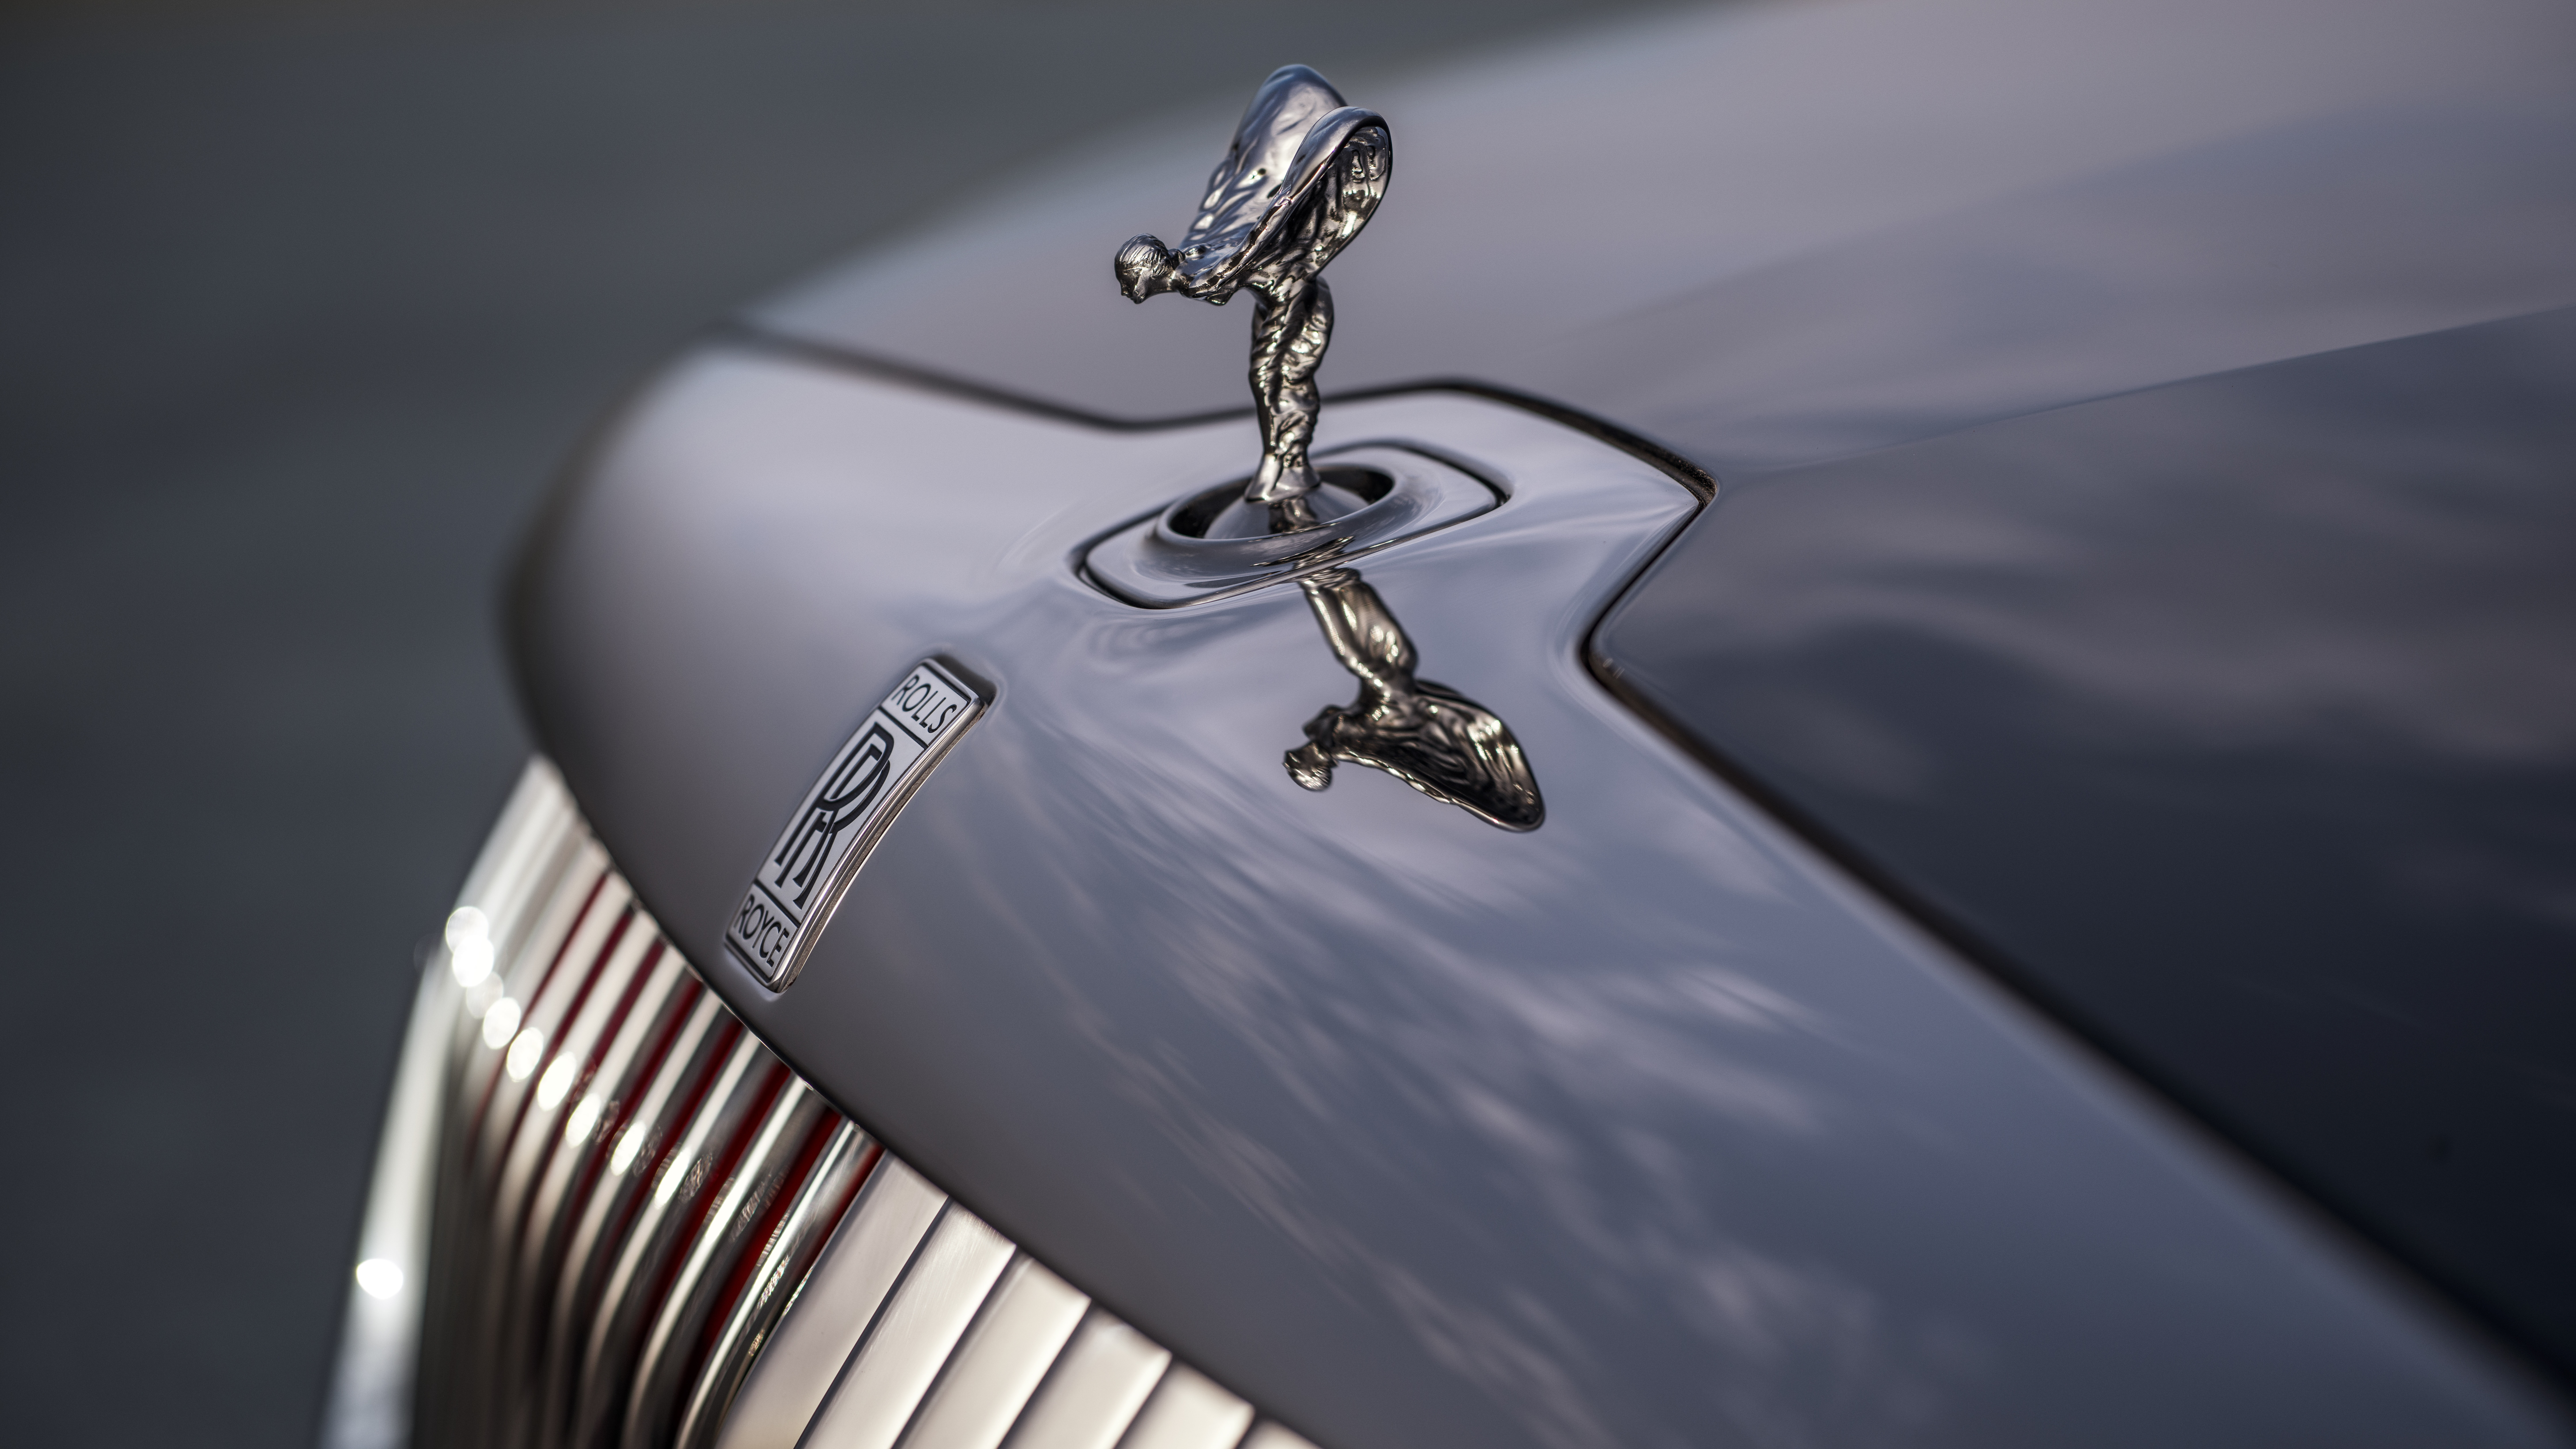 The new Rolls-Royce La Rose Noire Droptail